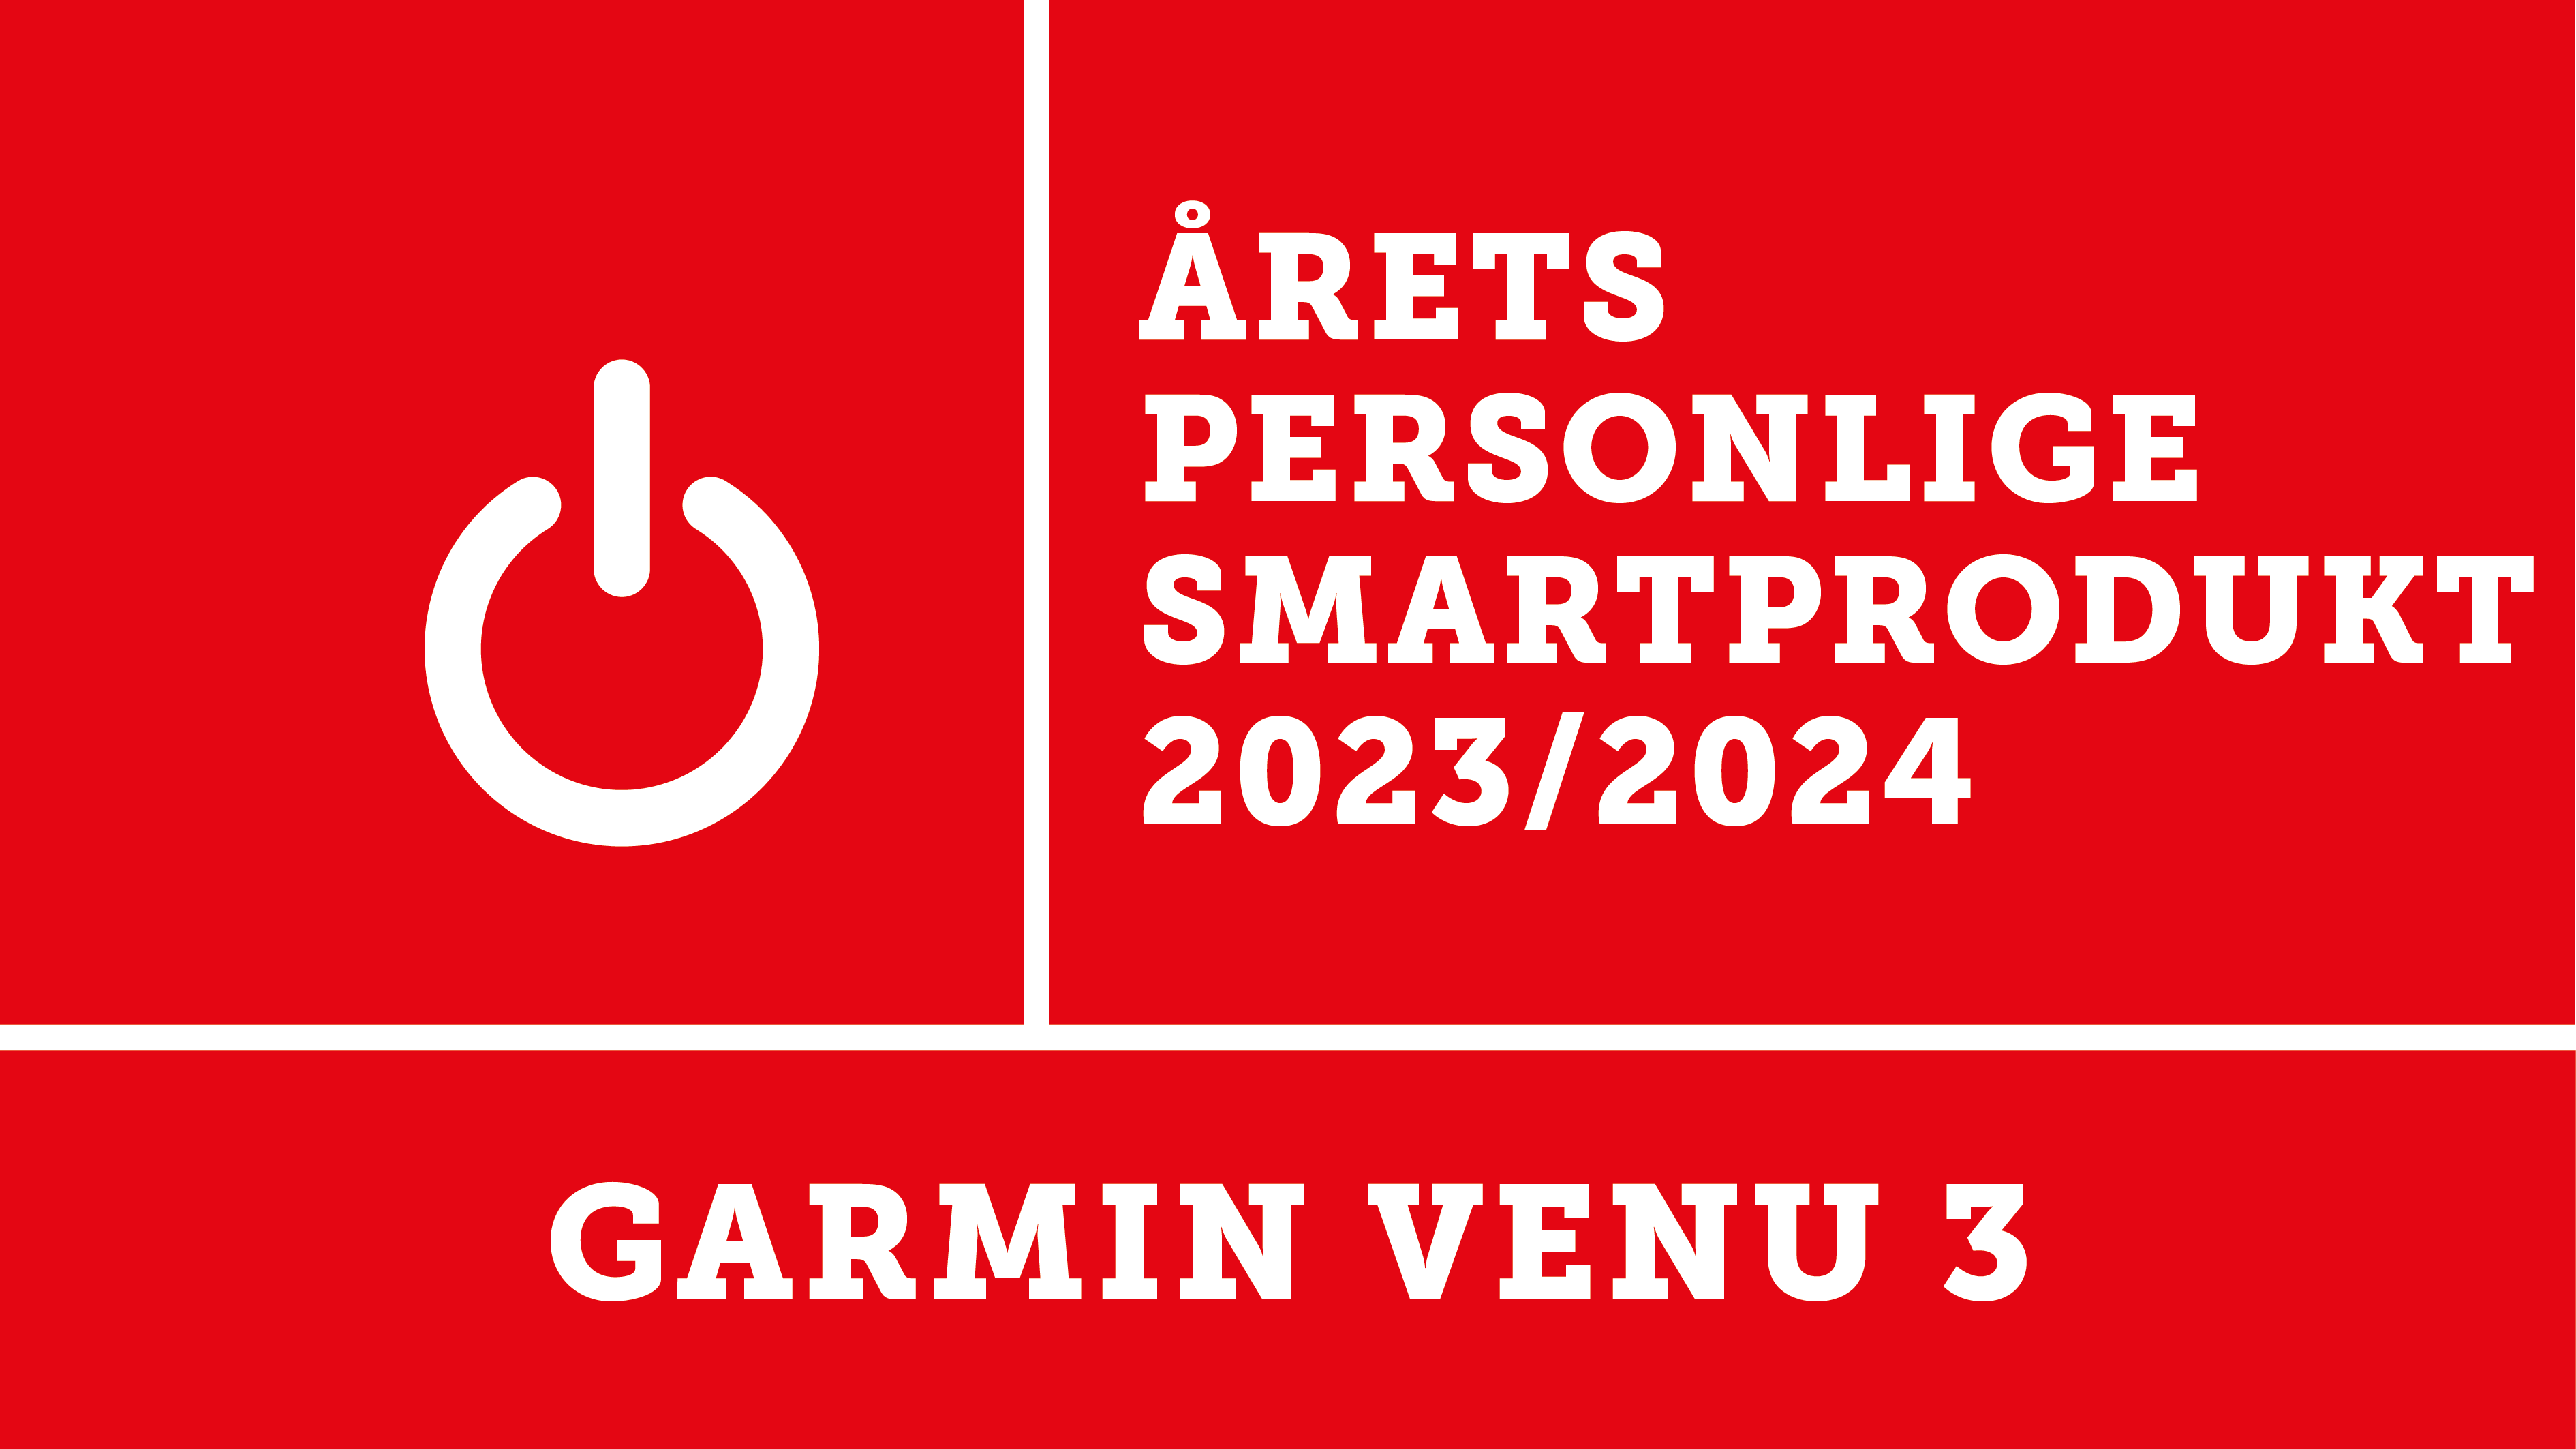 Garmin Venu 3 er kåret til årets personlige smartprodukt 2023 av Elektronikkbransjen. 